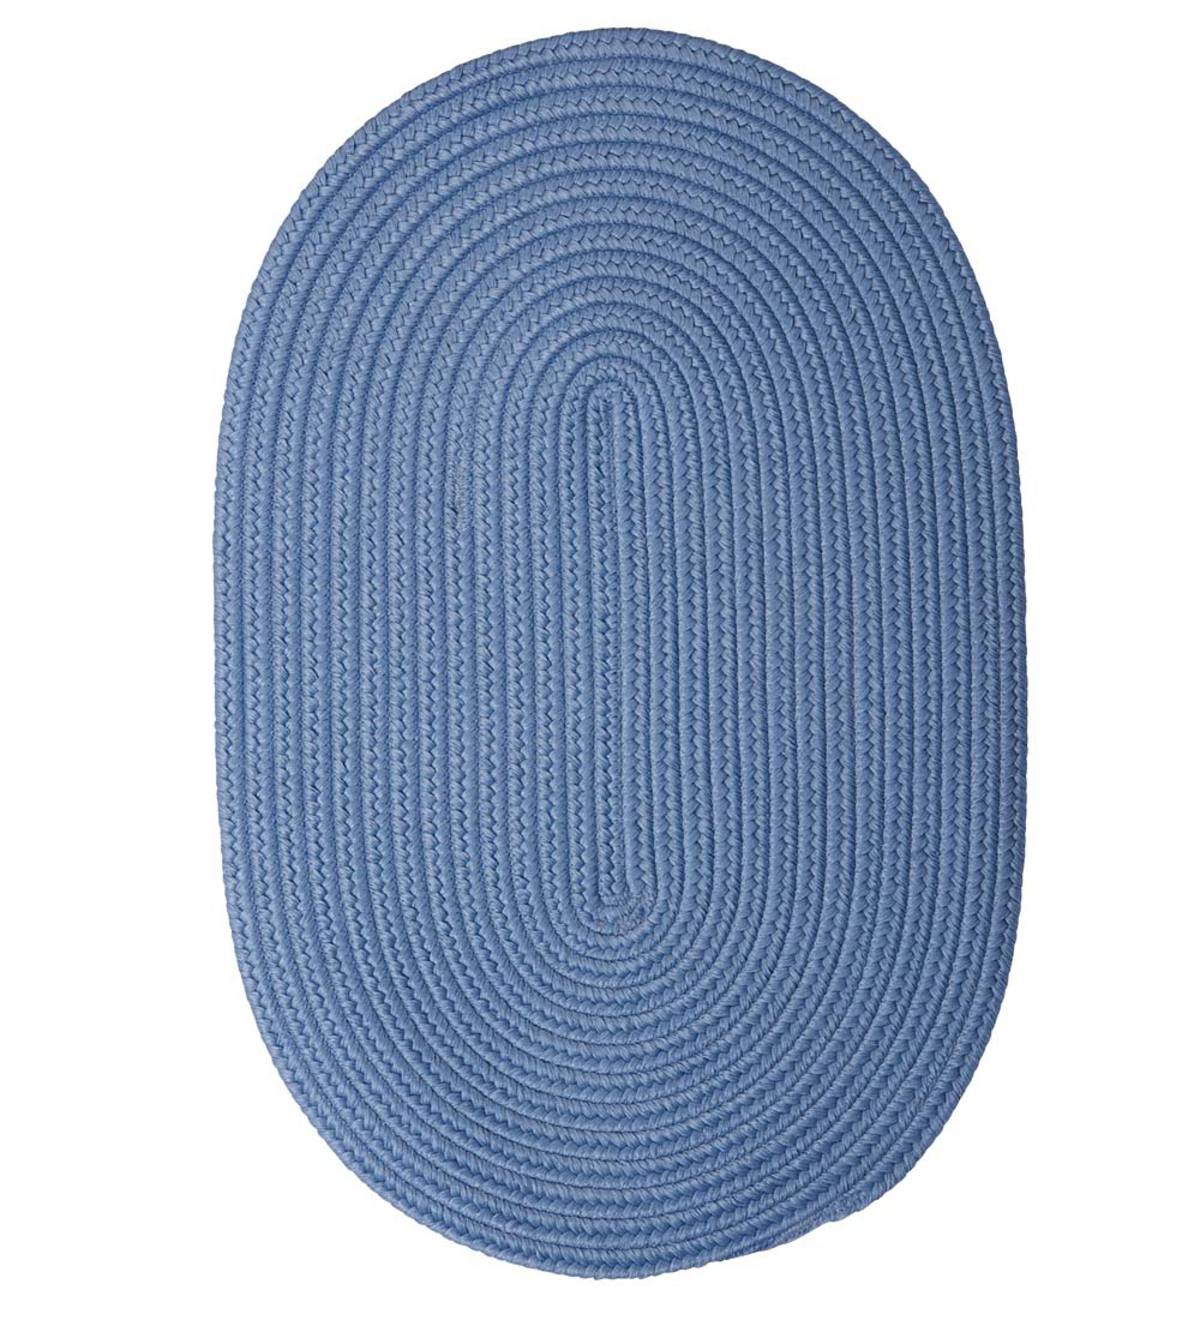 2' x 3' Oval Braided Rug - Blue